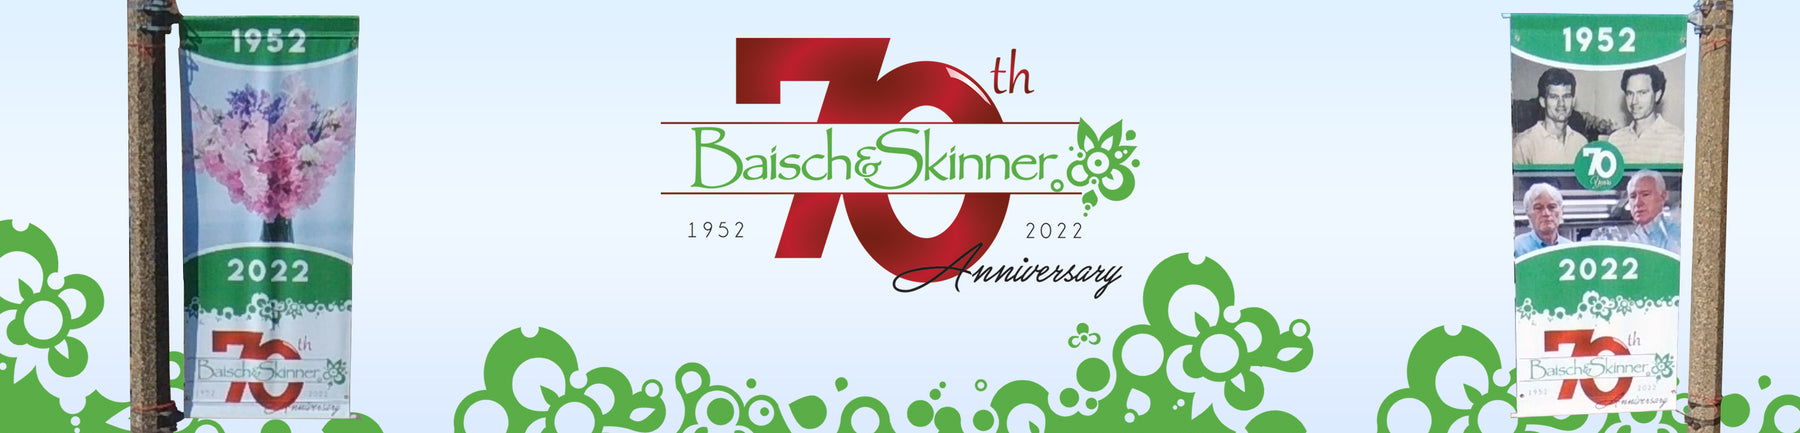 Baisch and Skinner - 70th Anniversary